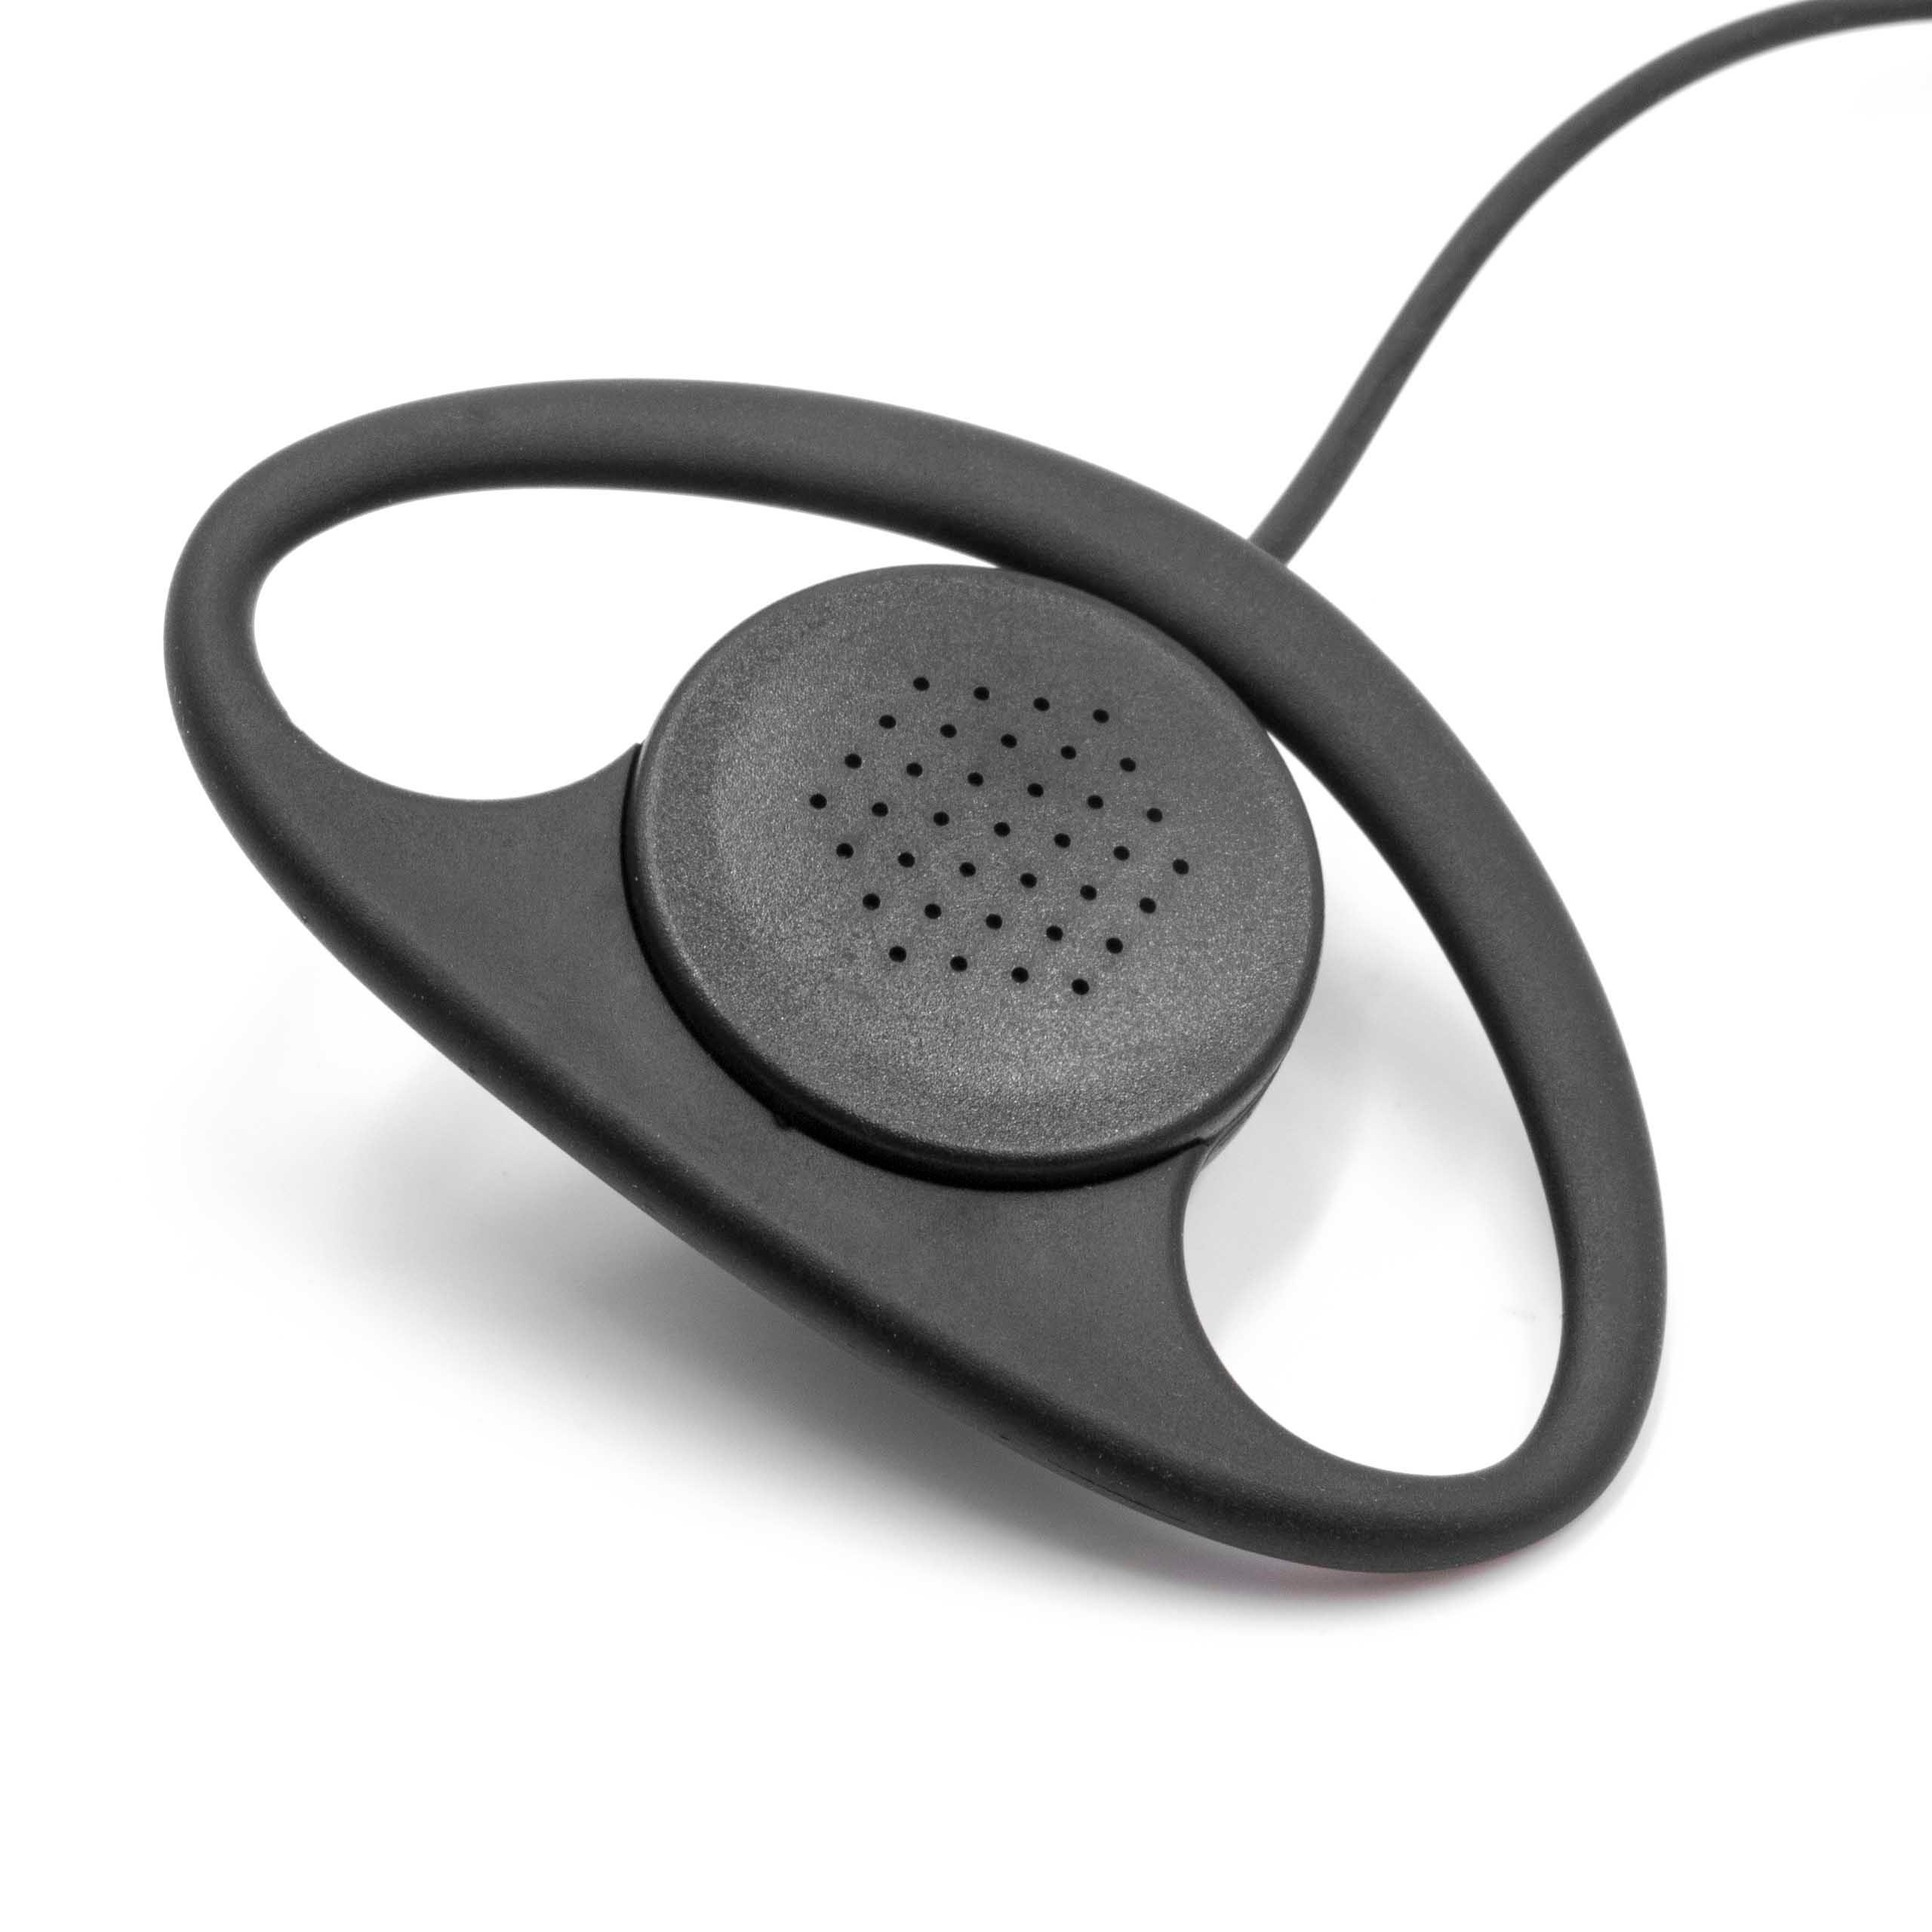 Oreillette de talkie-walkie pour Midland CXT240 et autres - Avec touche de réponse + support clip, noir